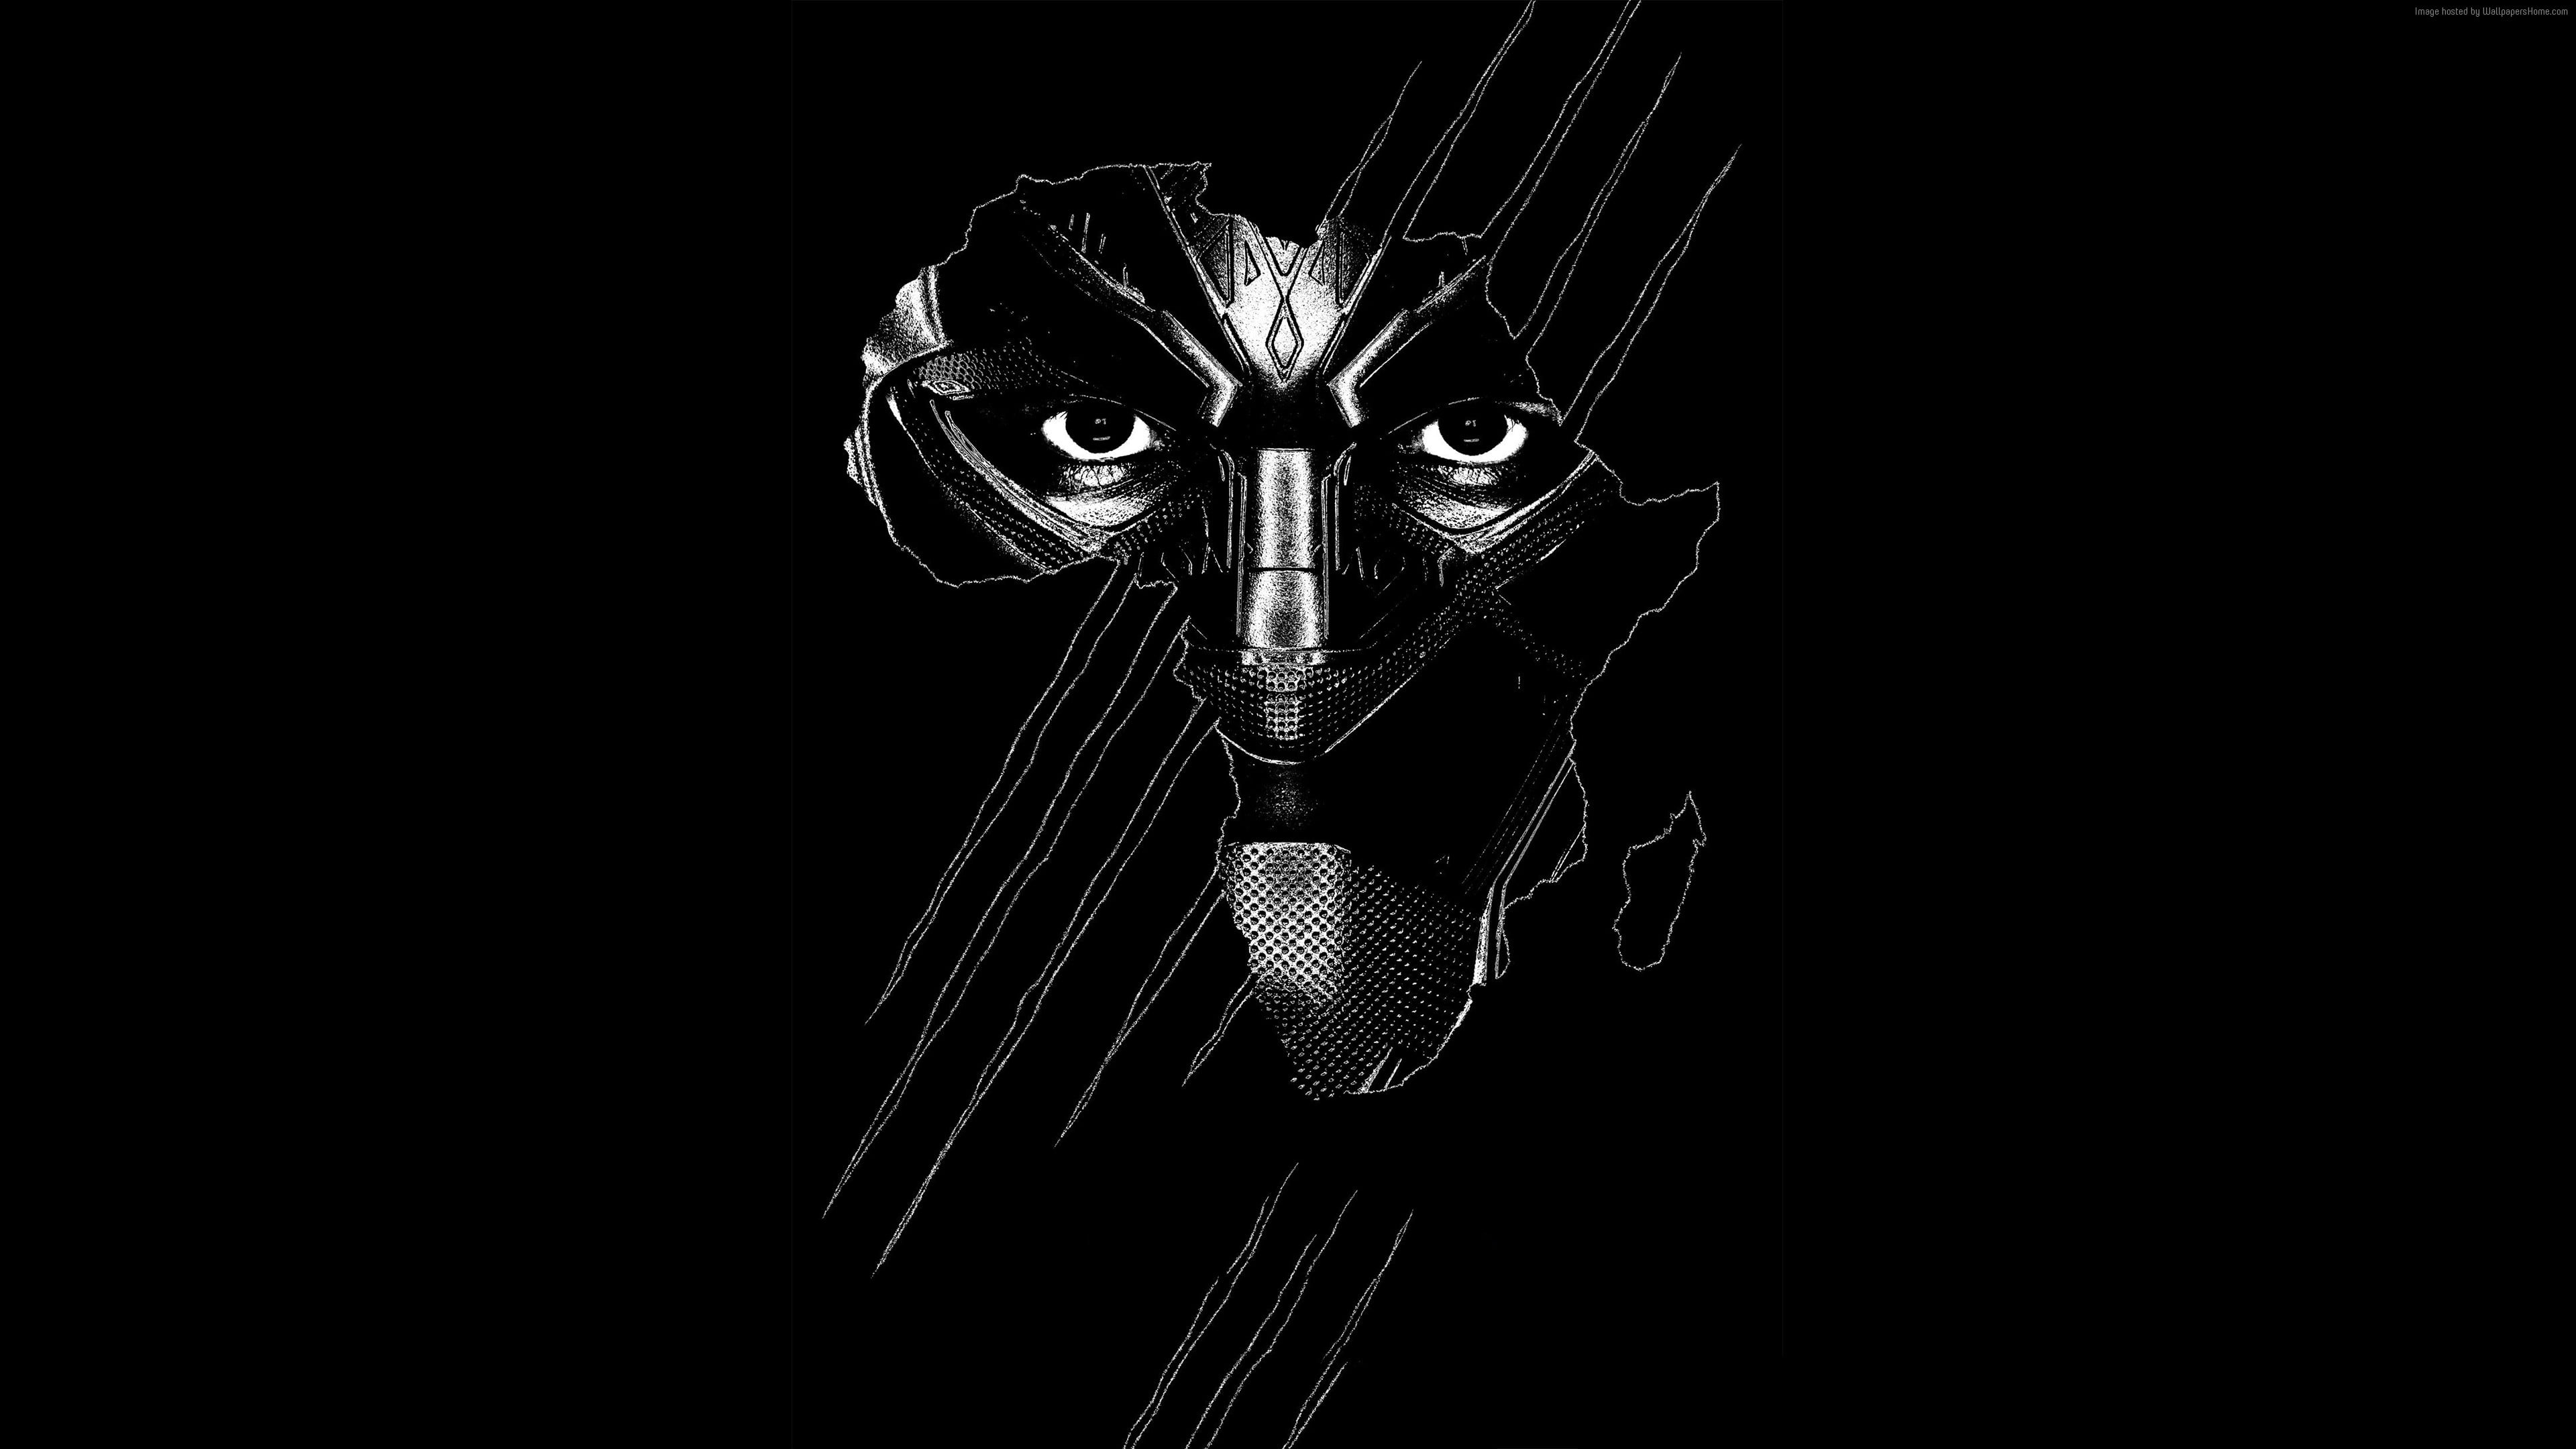 Hình ảnh Black Panther và Black mask trên chiếc Poster 4K HD rực rỡ này thực sự là một tuyệt tác hoàn hảo, khiến bạn không thể rời mắt, kích thích mọi giác quan của người xem. Sự kết hợp giữa đen và sáng tạo, tập trung vào phong cách đơn giản và tối giản cực kì cao, tạo nên một sức hút đặc biệt mà bạn nhất định không muốn bỏ qua.